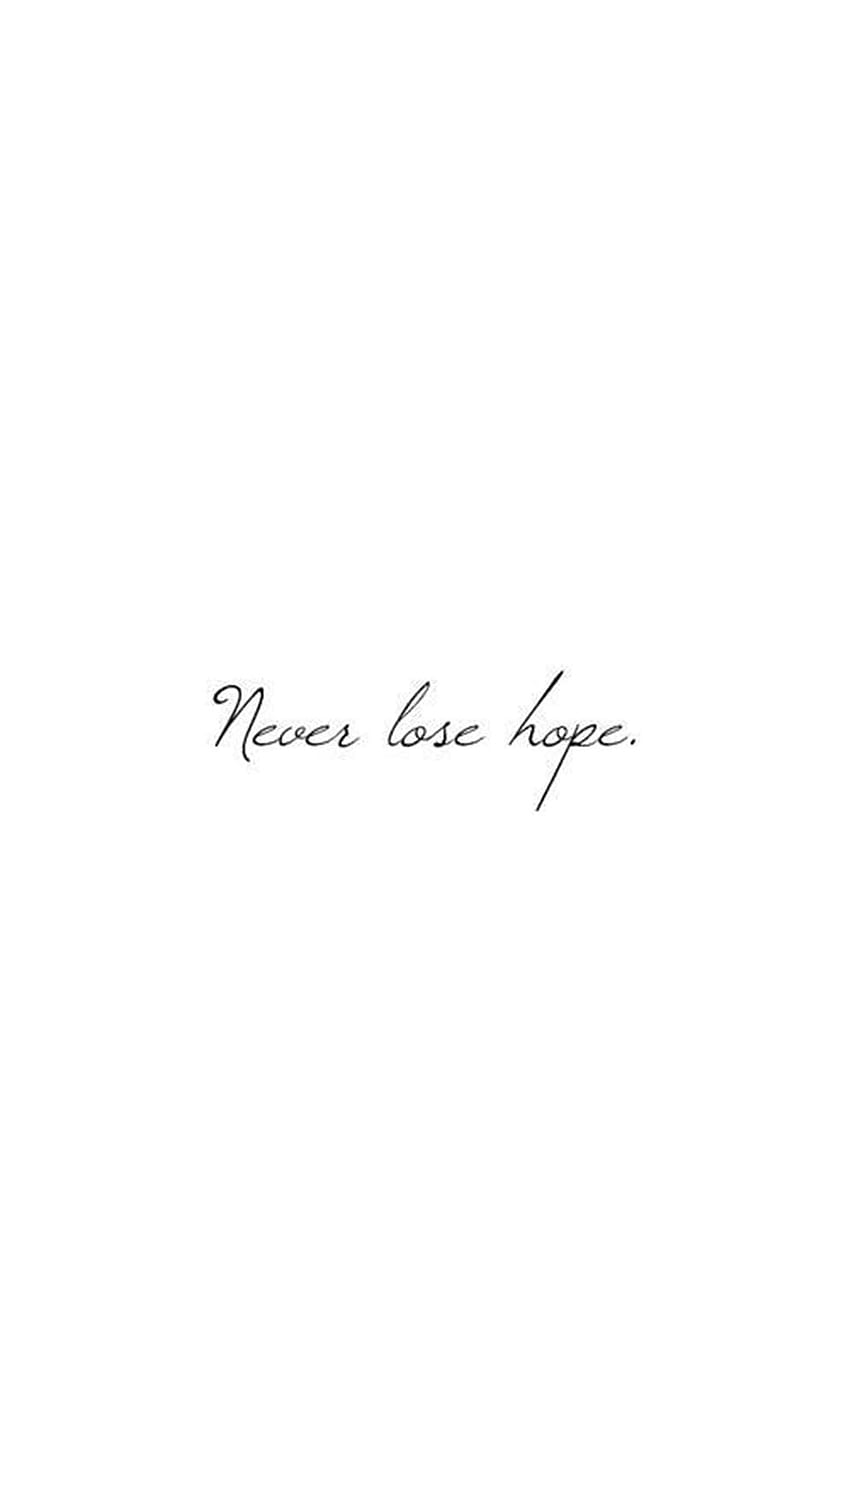 200+ Free Black Hope & Hope Images - Pixabay